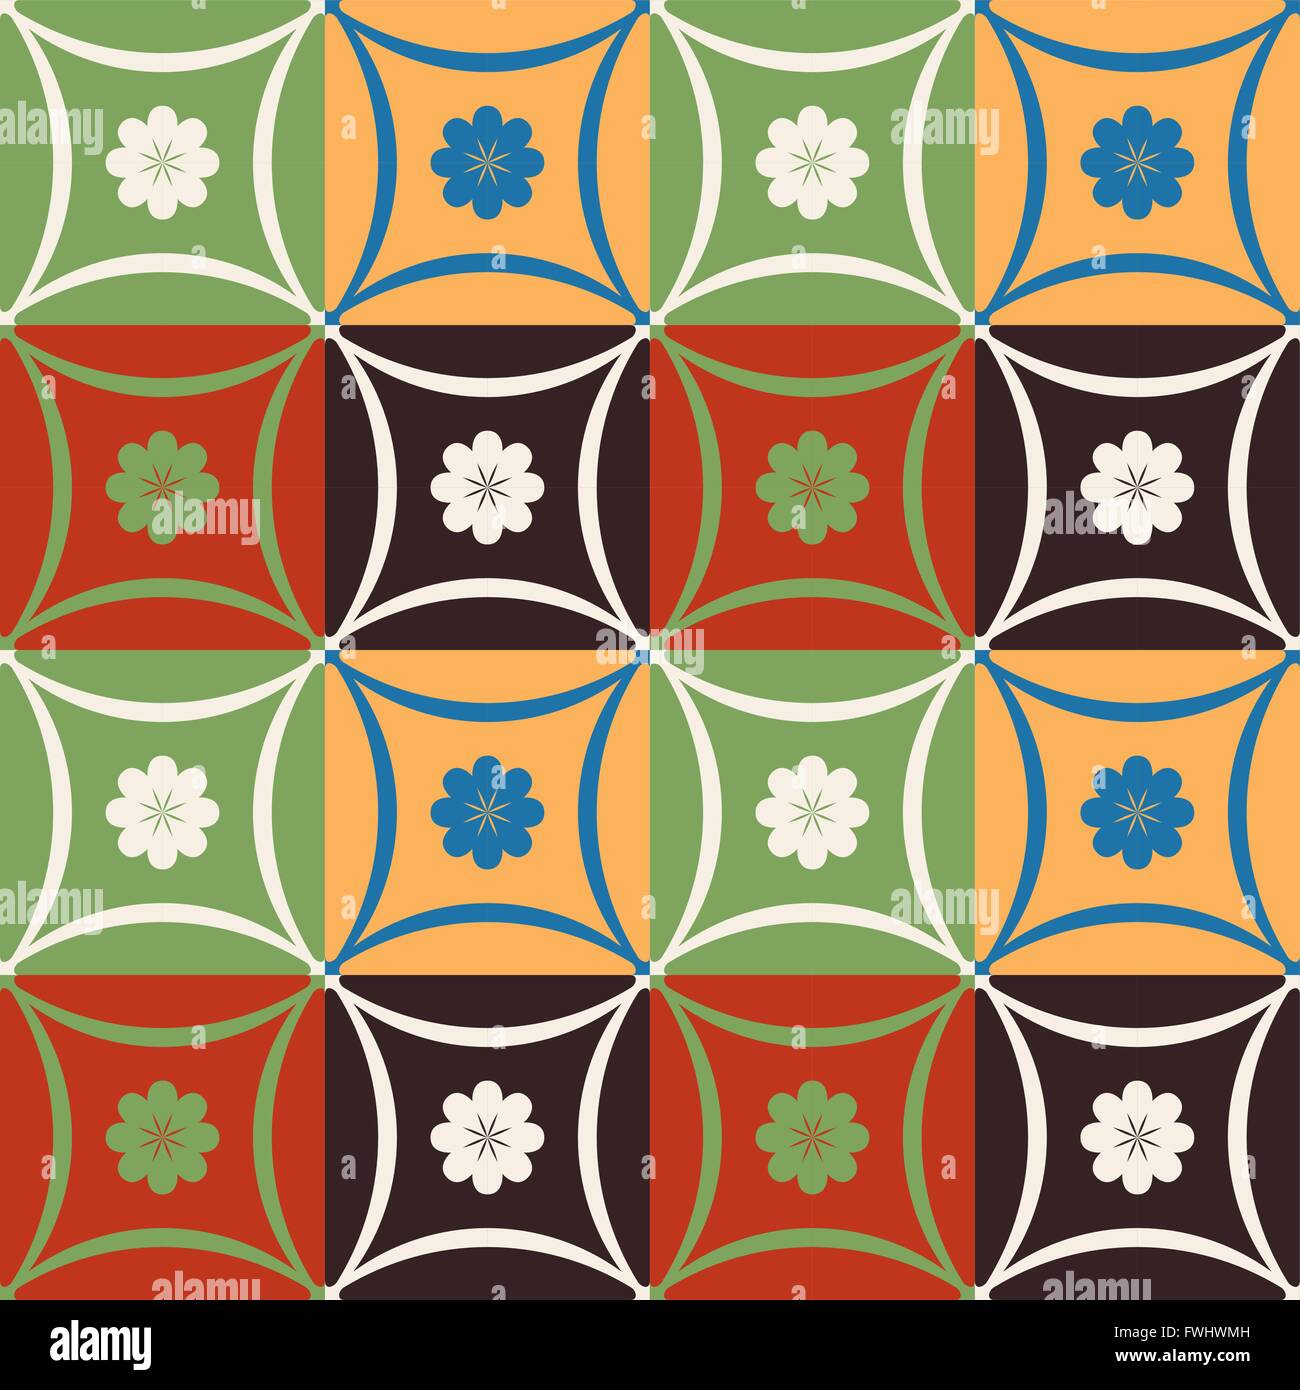 Transparente avec motif floral vintage décoration couleur et des formes géométriques. Vecteur EPS10. Illustration de Vecteur